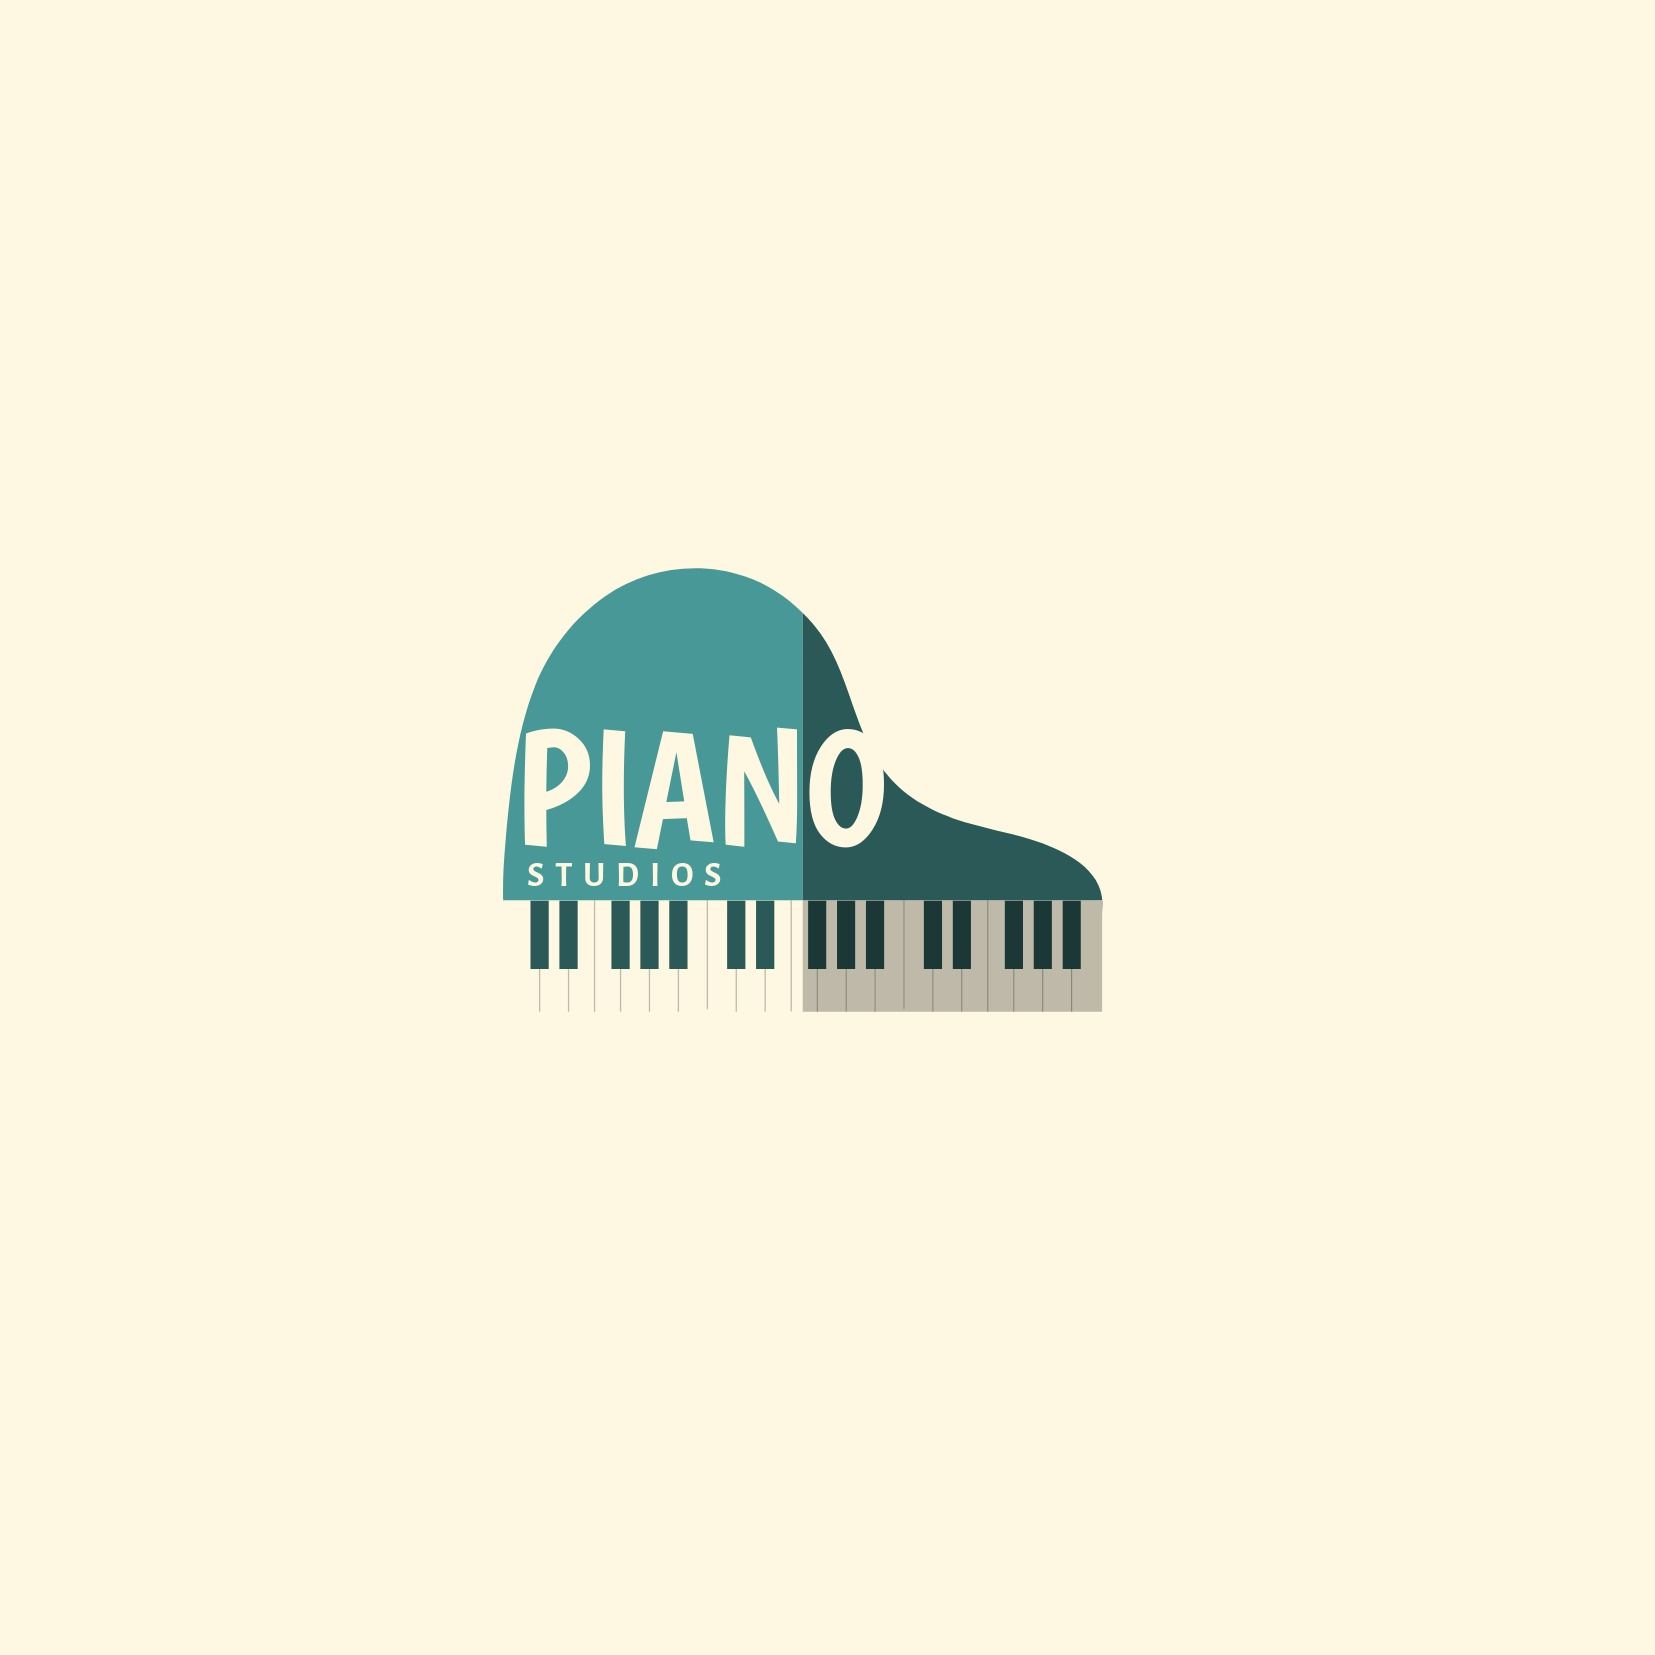 Logo du studio de piano avec piano turquoise sur fond clair - Utilisation de la police Boogaloo - Image